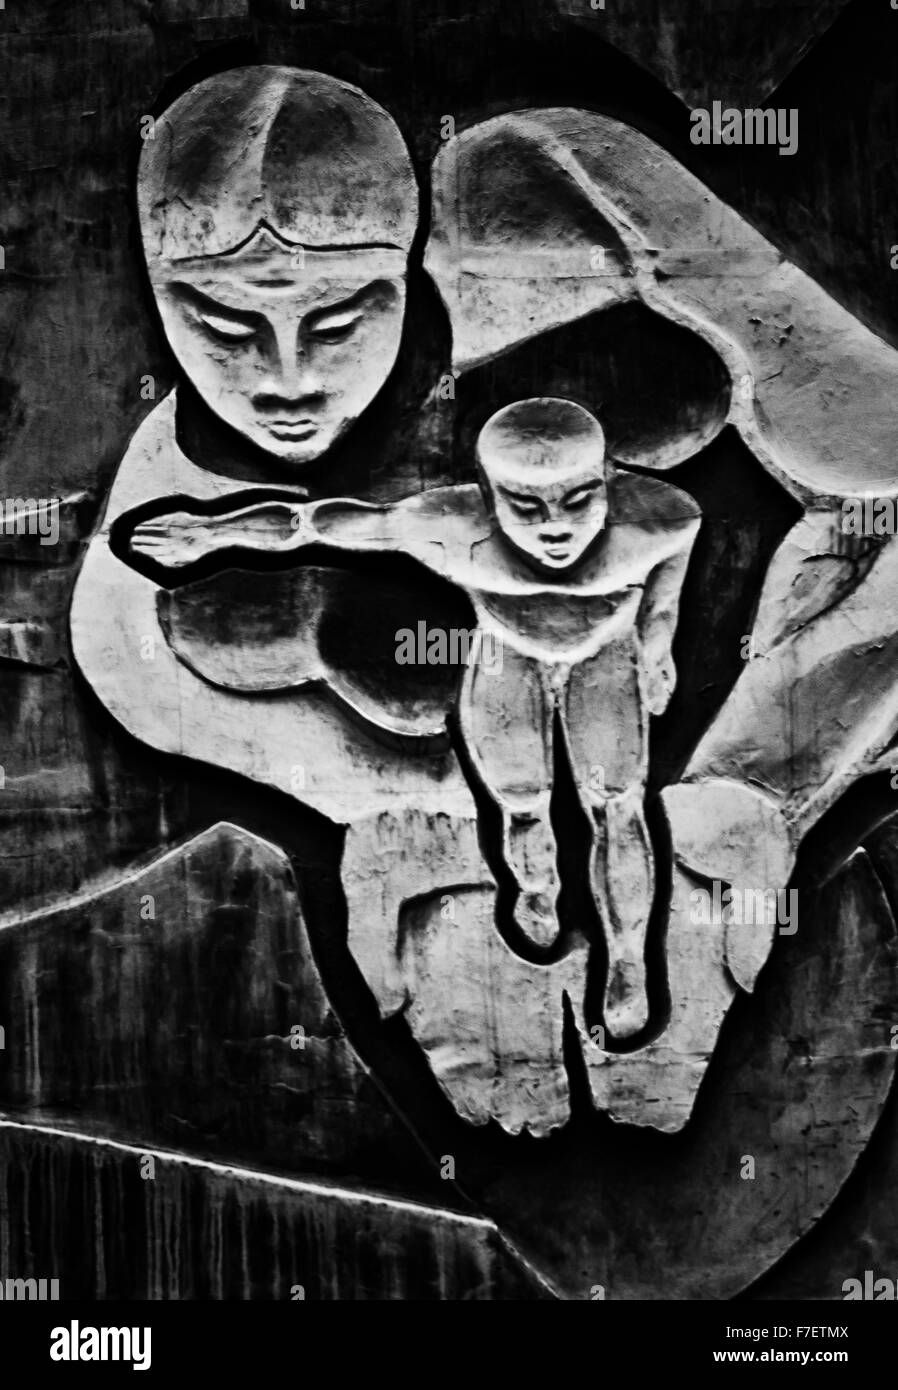 Vista artistica di una donna tenendo un giovane bambino nelle sue mani aperte.- Monocromatico la fotografia in bianco e nero fusion Foto Stock